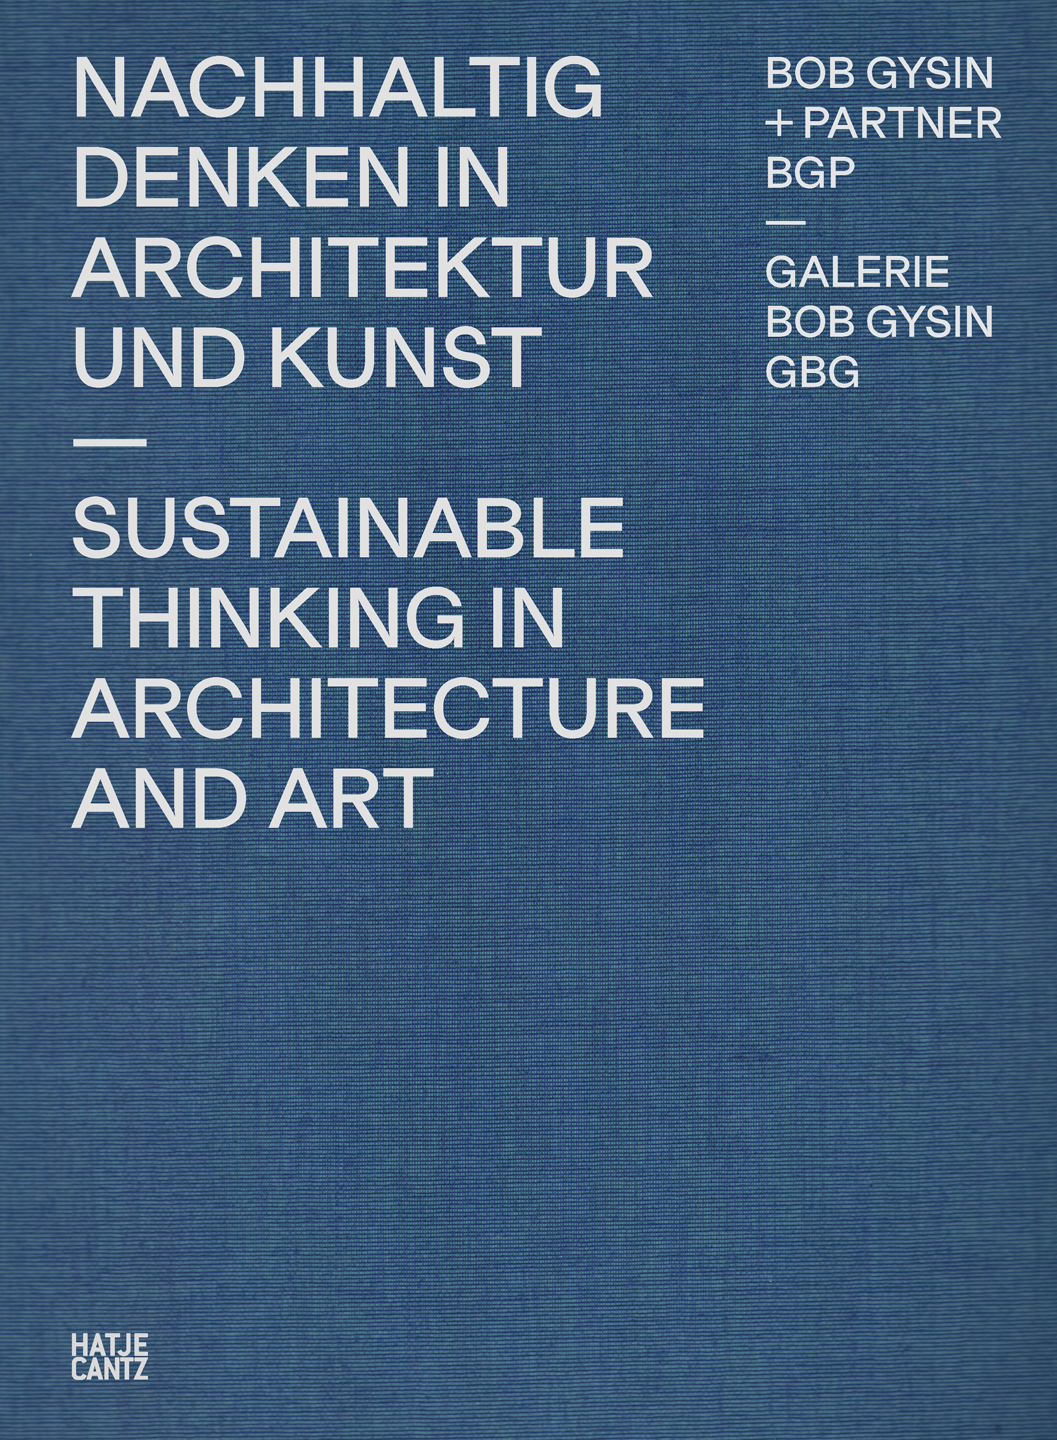 BGP_Nachhaltig_Denken_in_Kunst_und_Architektur.jpg